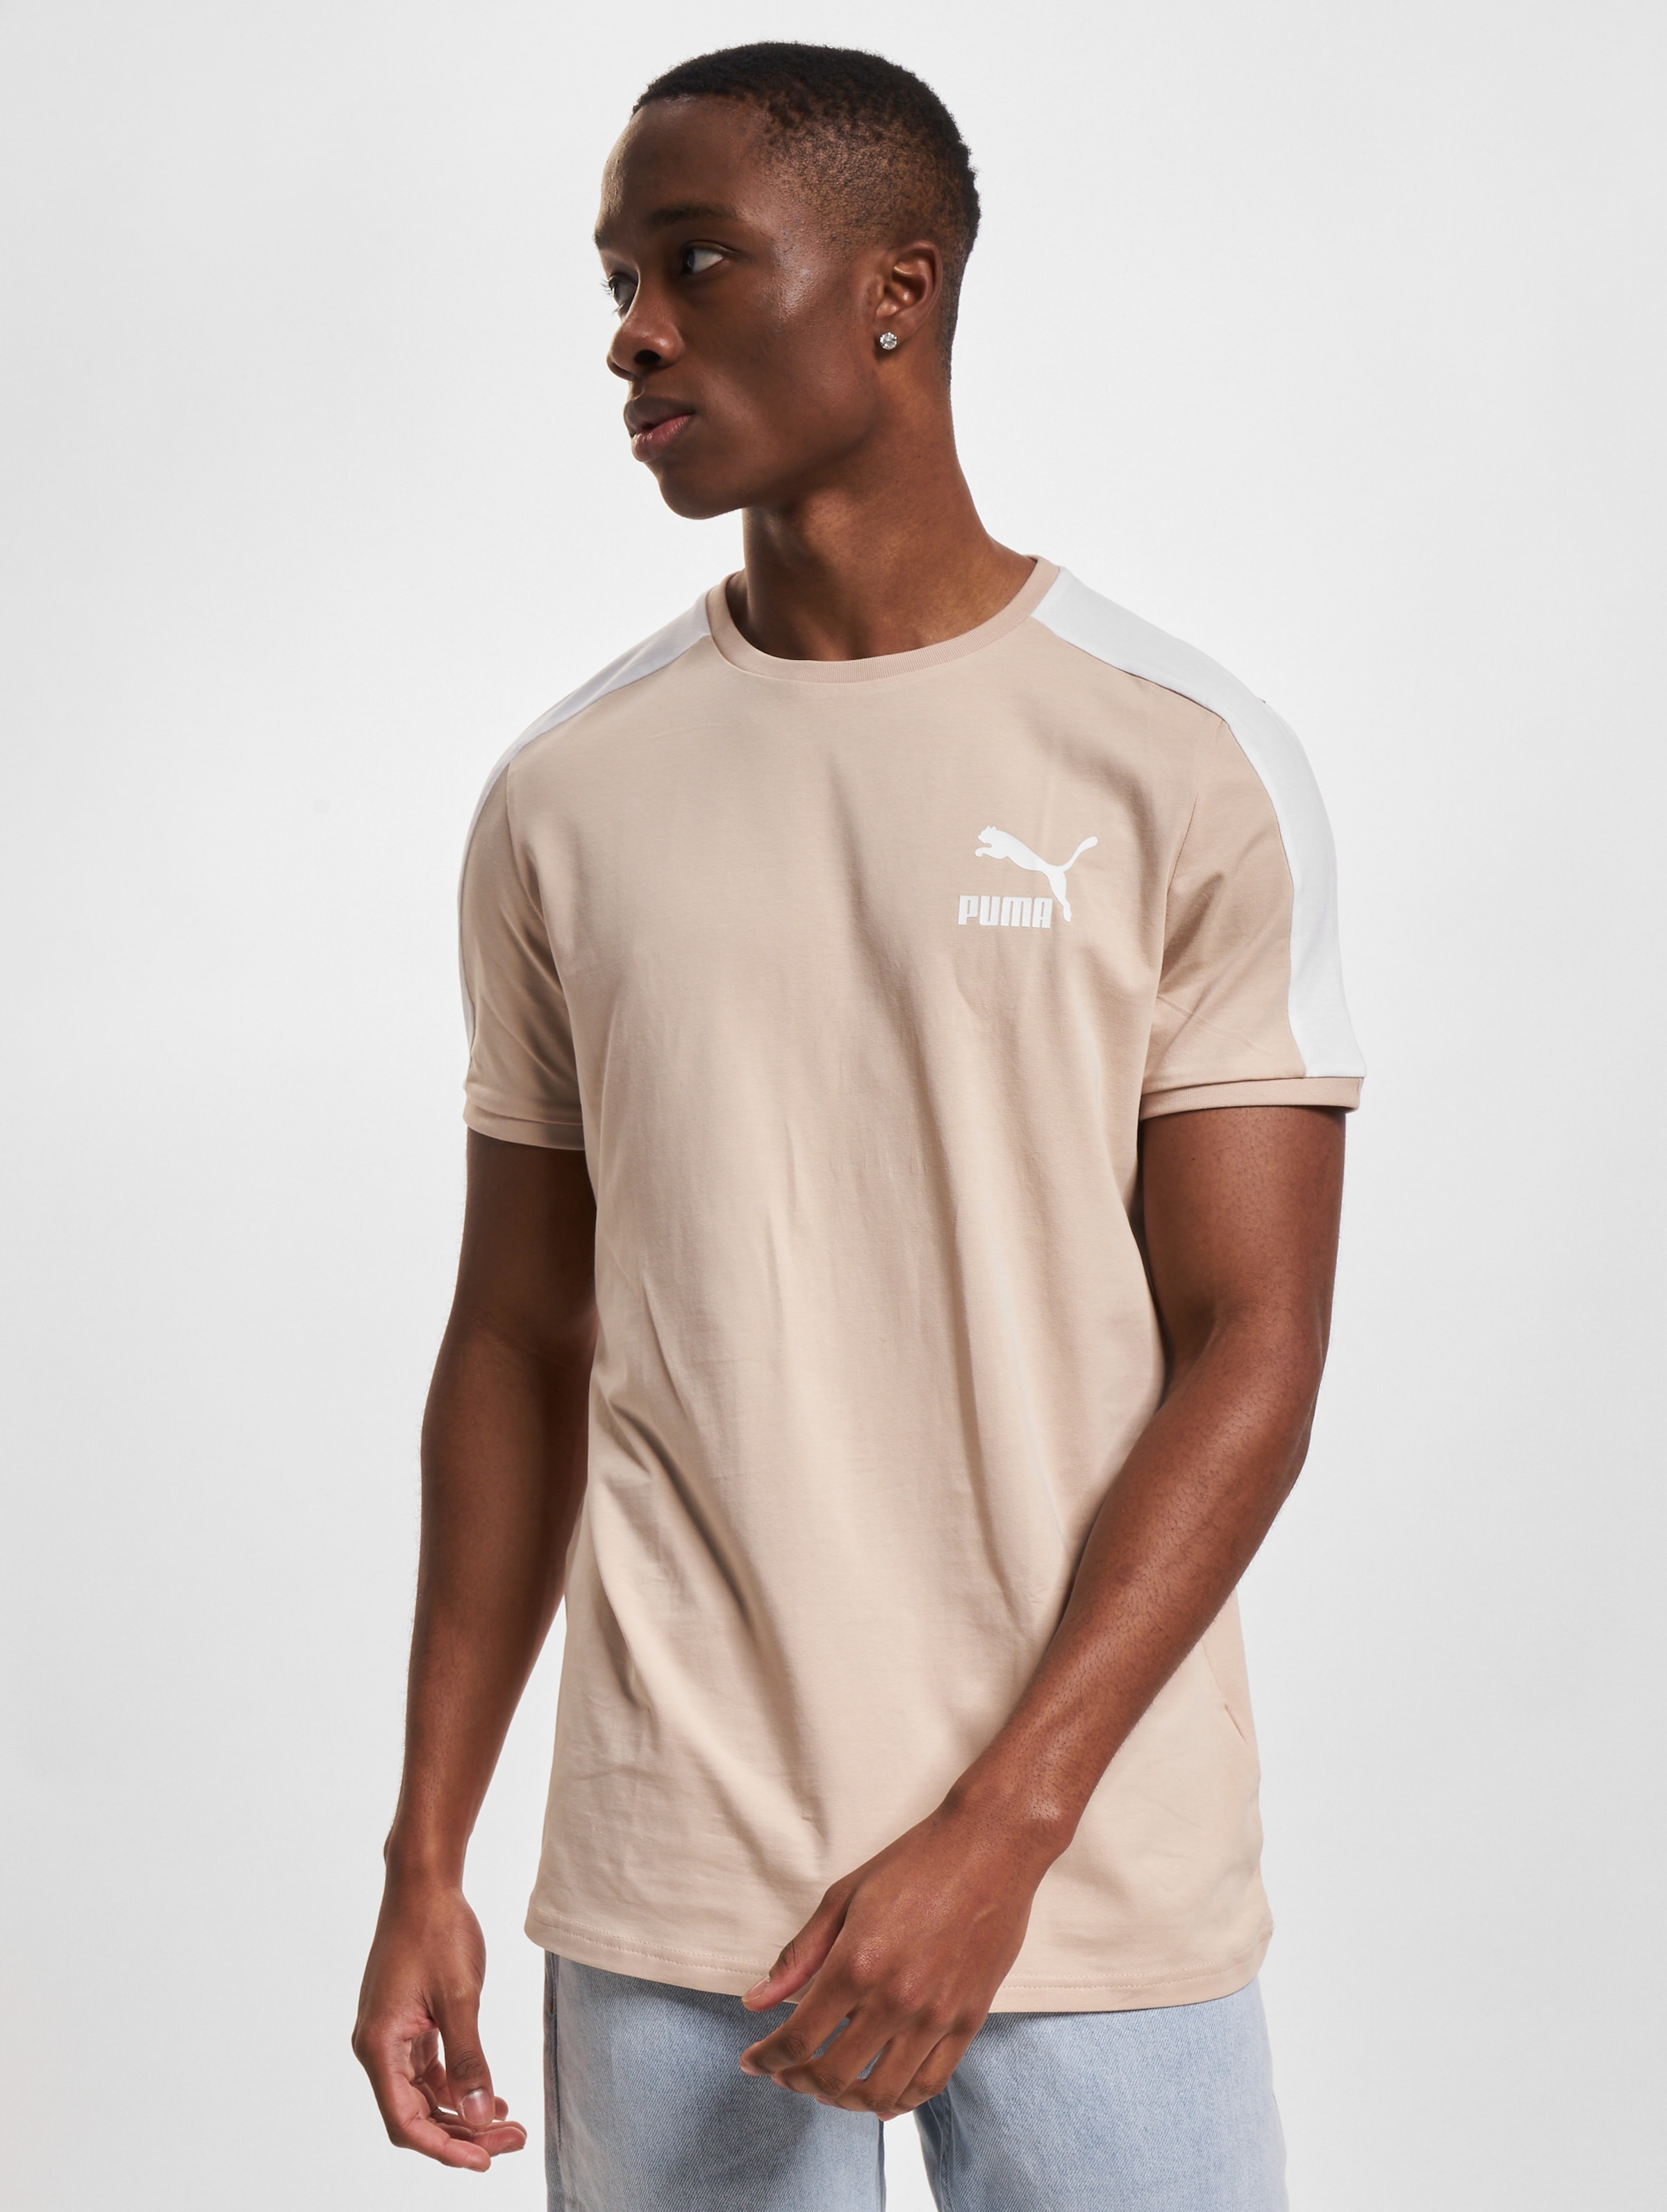 Puma T-Shirt Mannen op kleur beige, Maat L